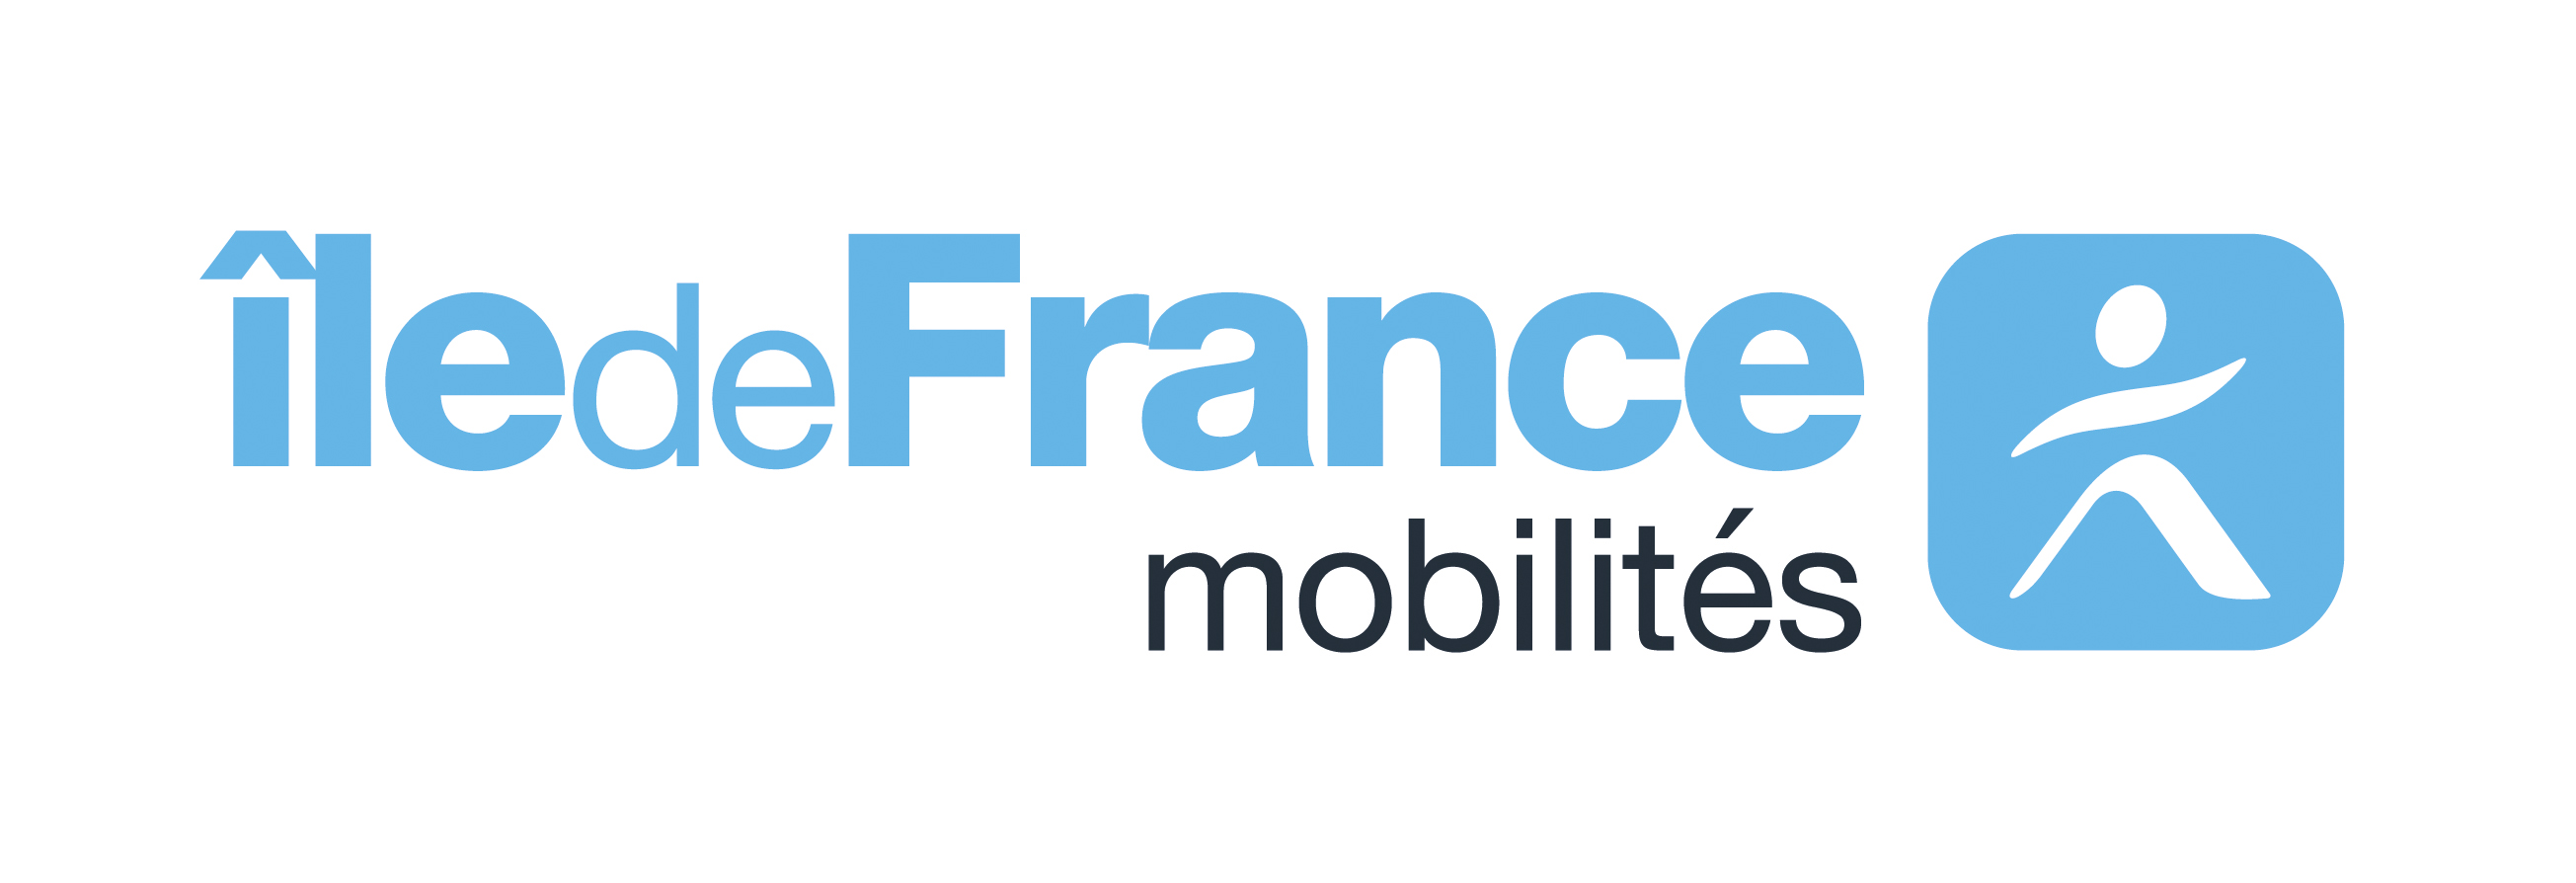 Ile-de-France Mobilités